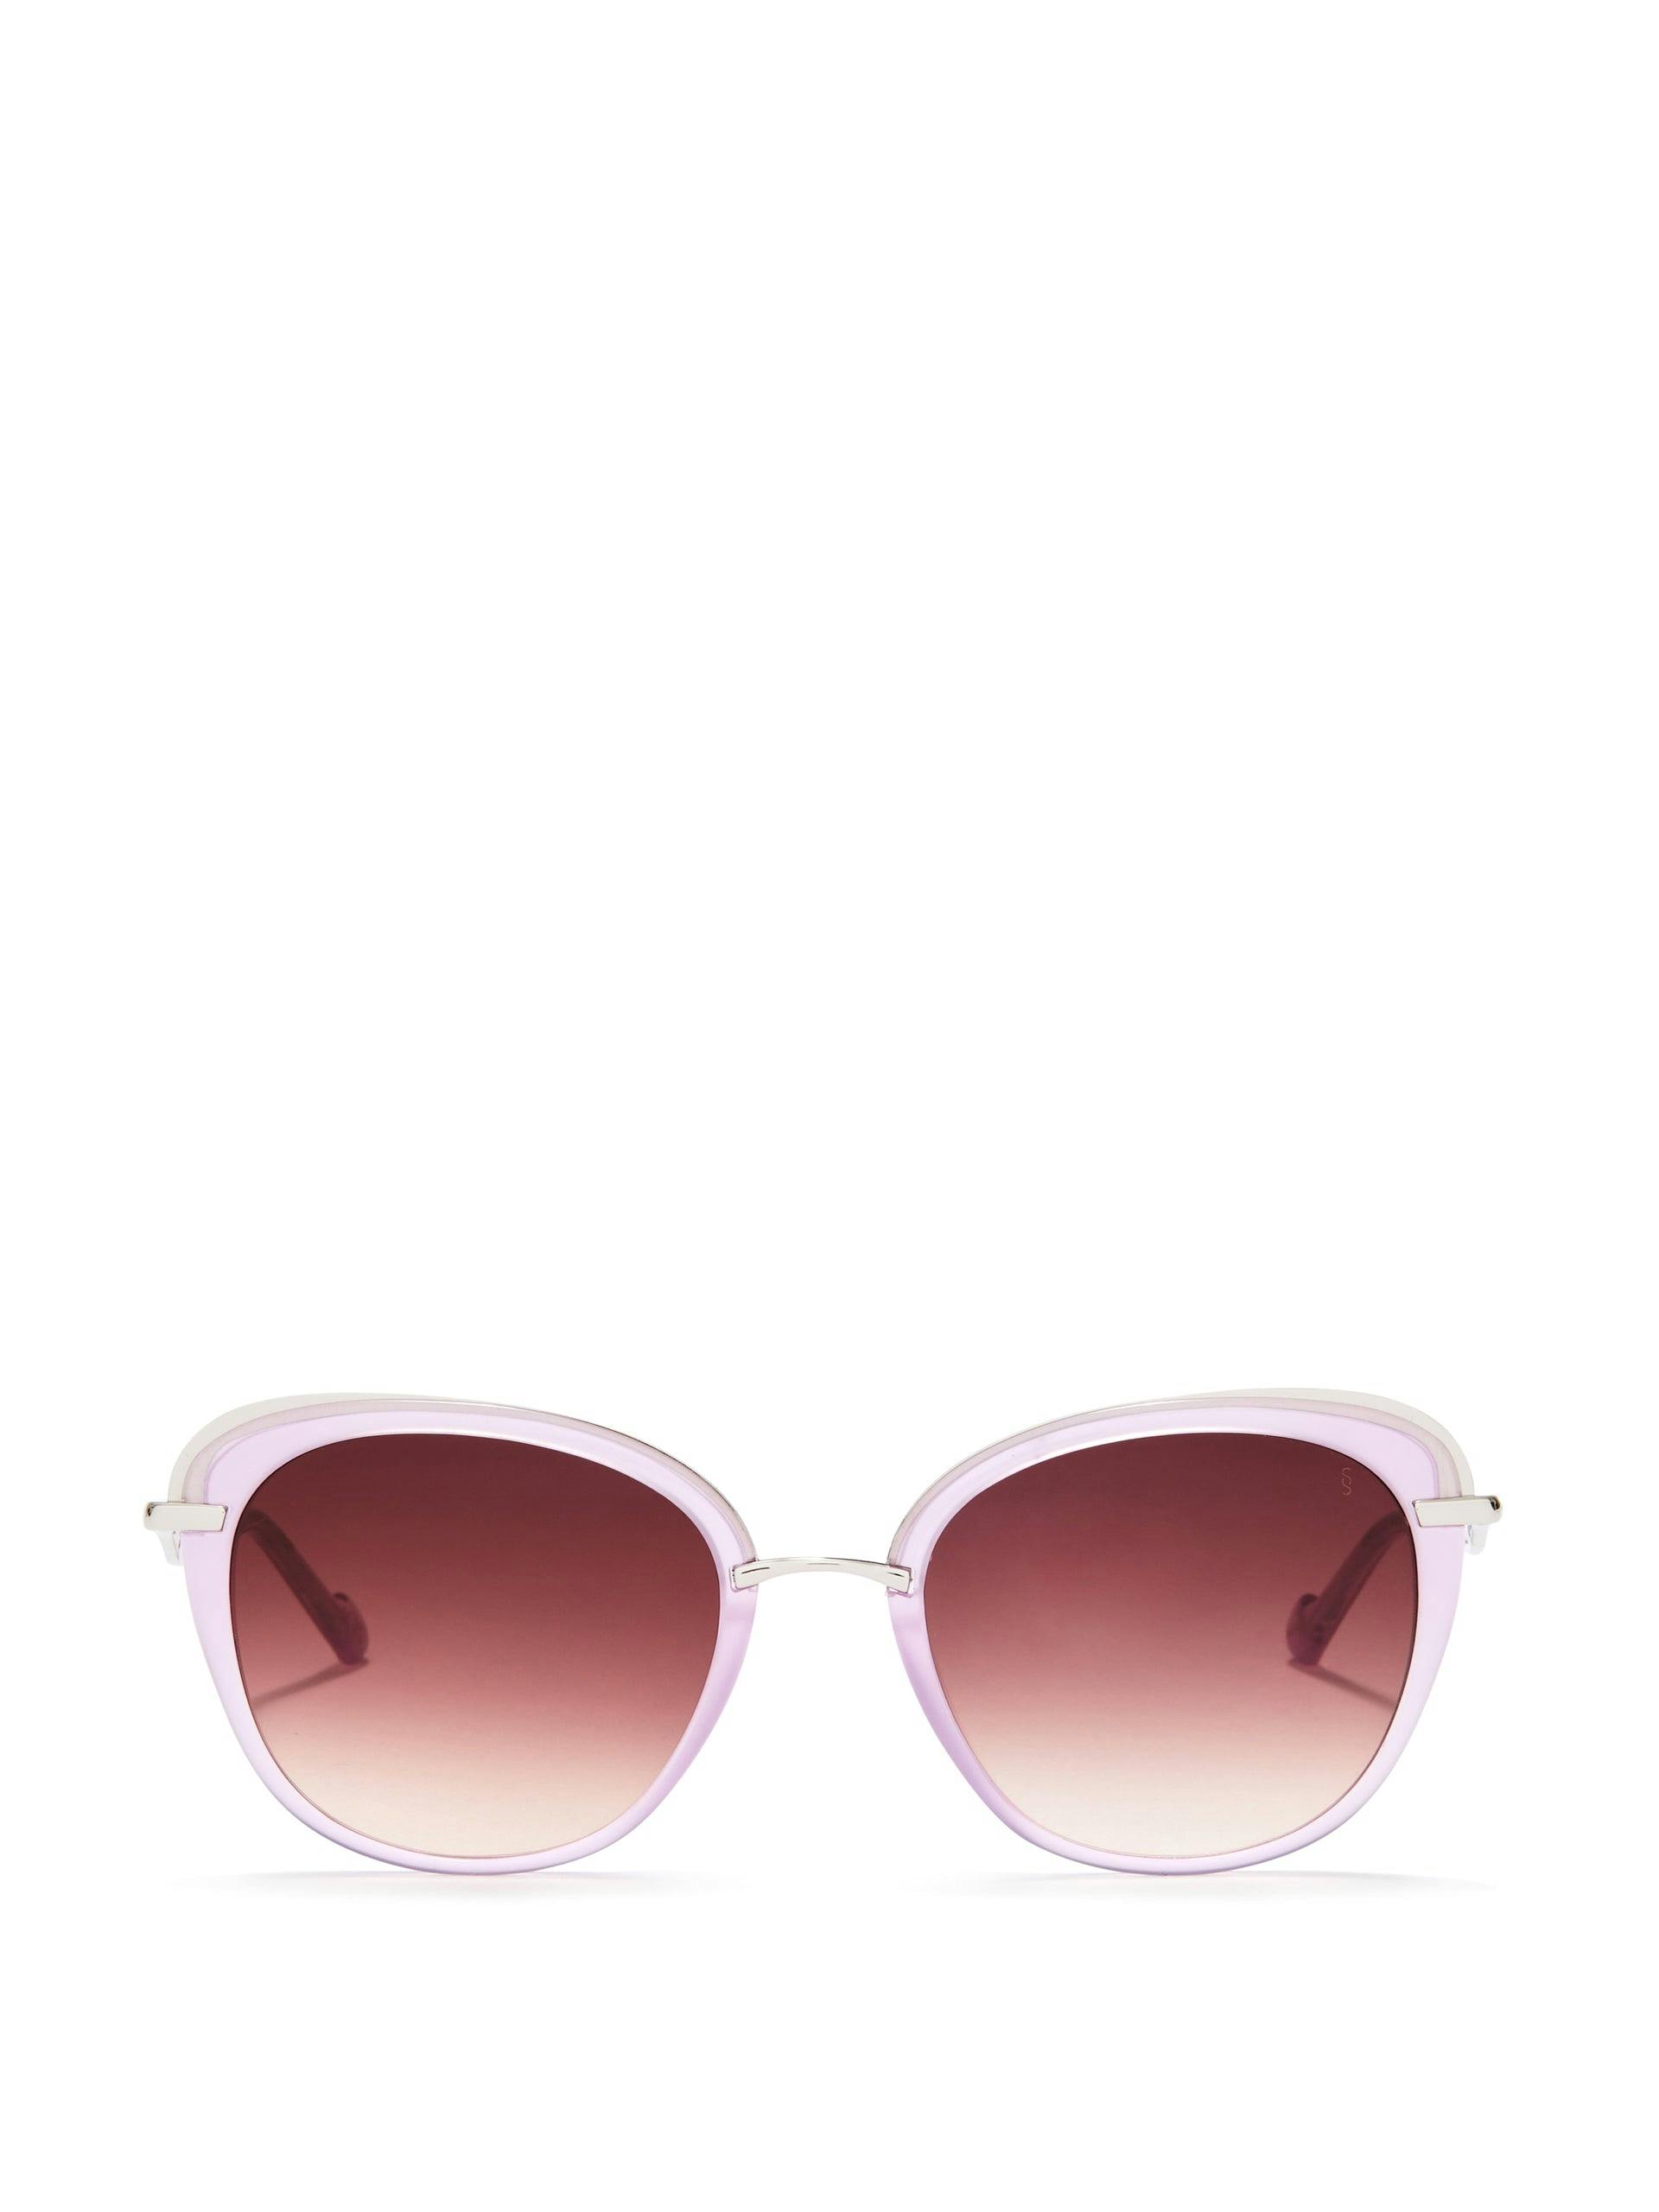 Blondie sunglasses in lavender